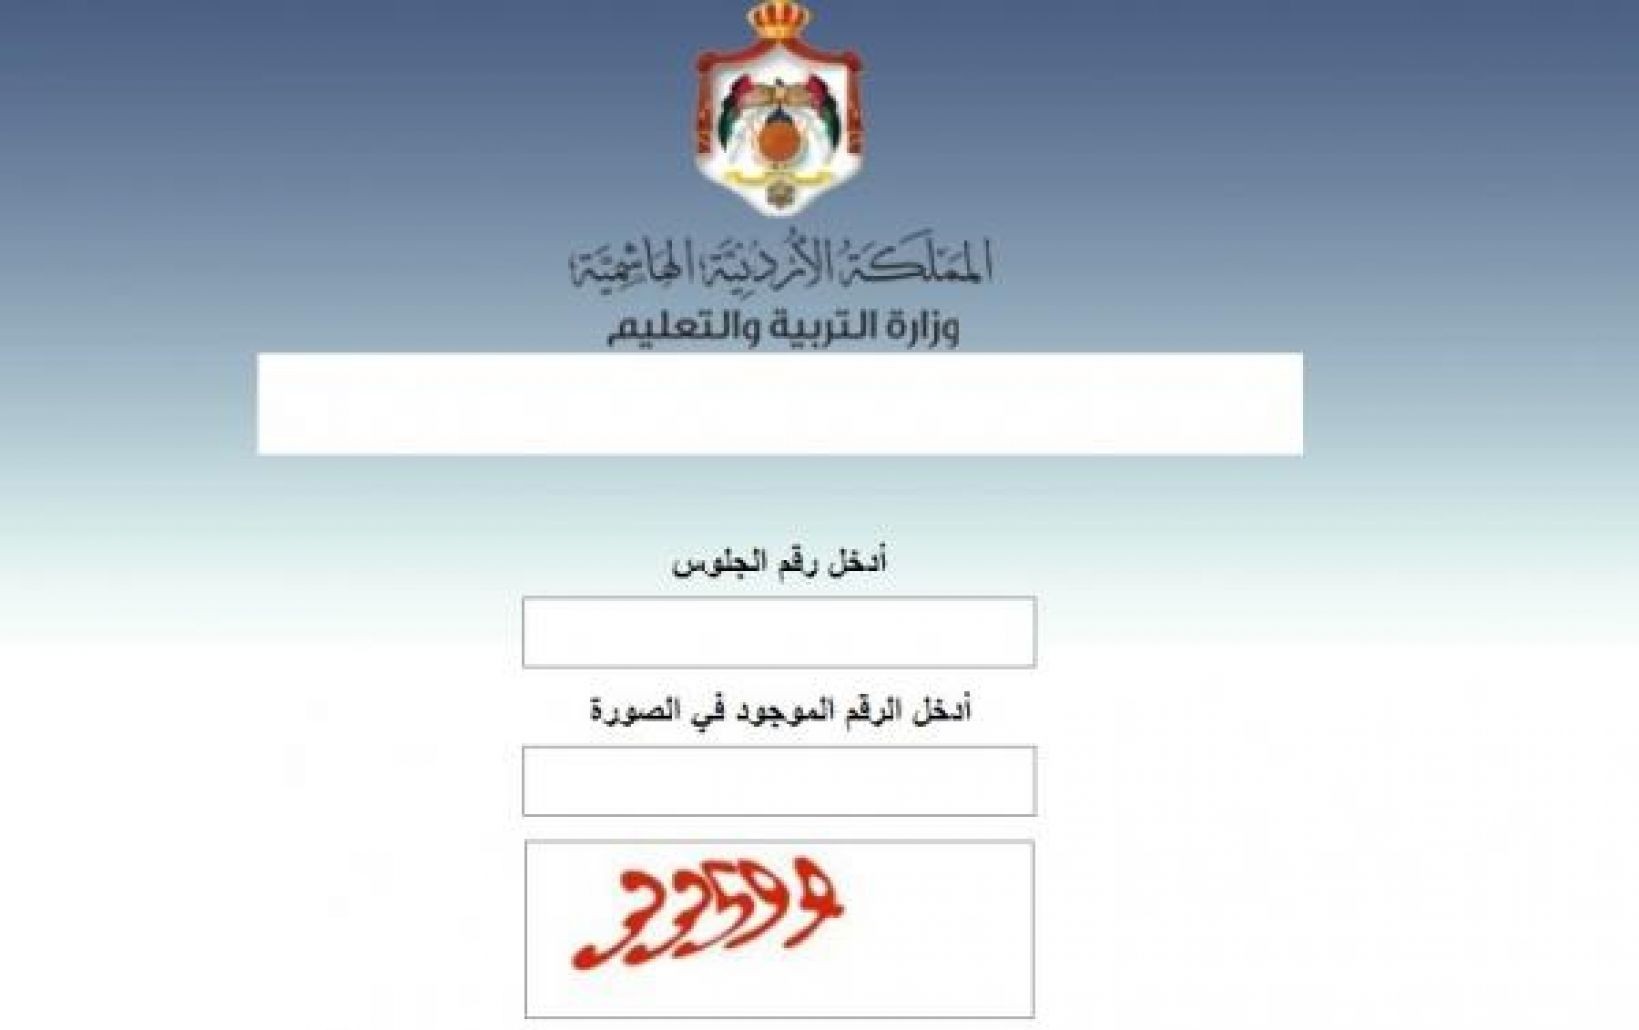 رابط منصة نتائج التوجيهي في الأردن 2022 التابع لوزارة التربية والتعليم الأردنية